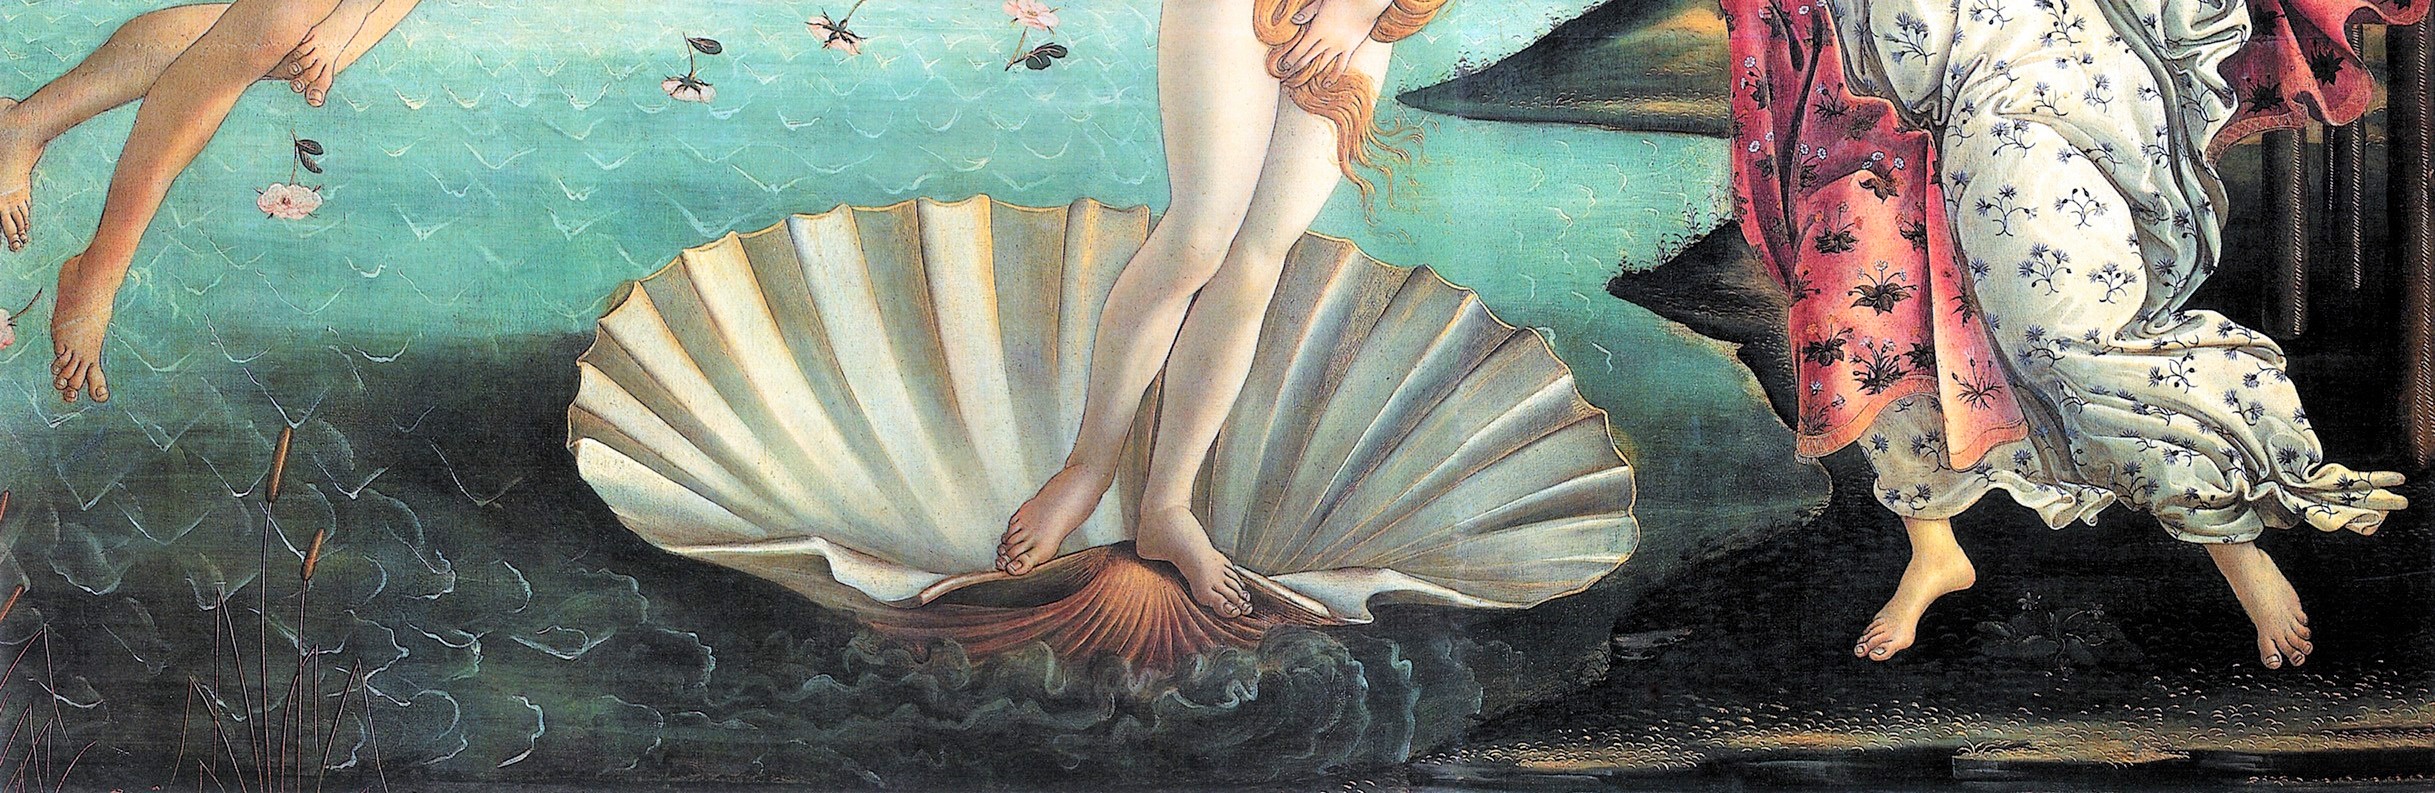 Sandro Botticelli, Die Geburt der Venus (Detailaufnahme), um 1486, Florenz, Galleria degli Uffizi.